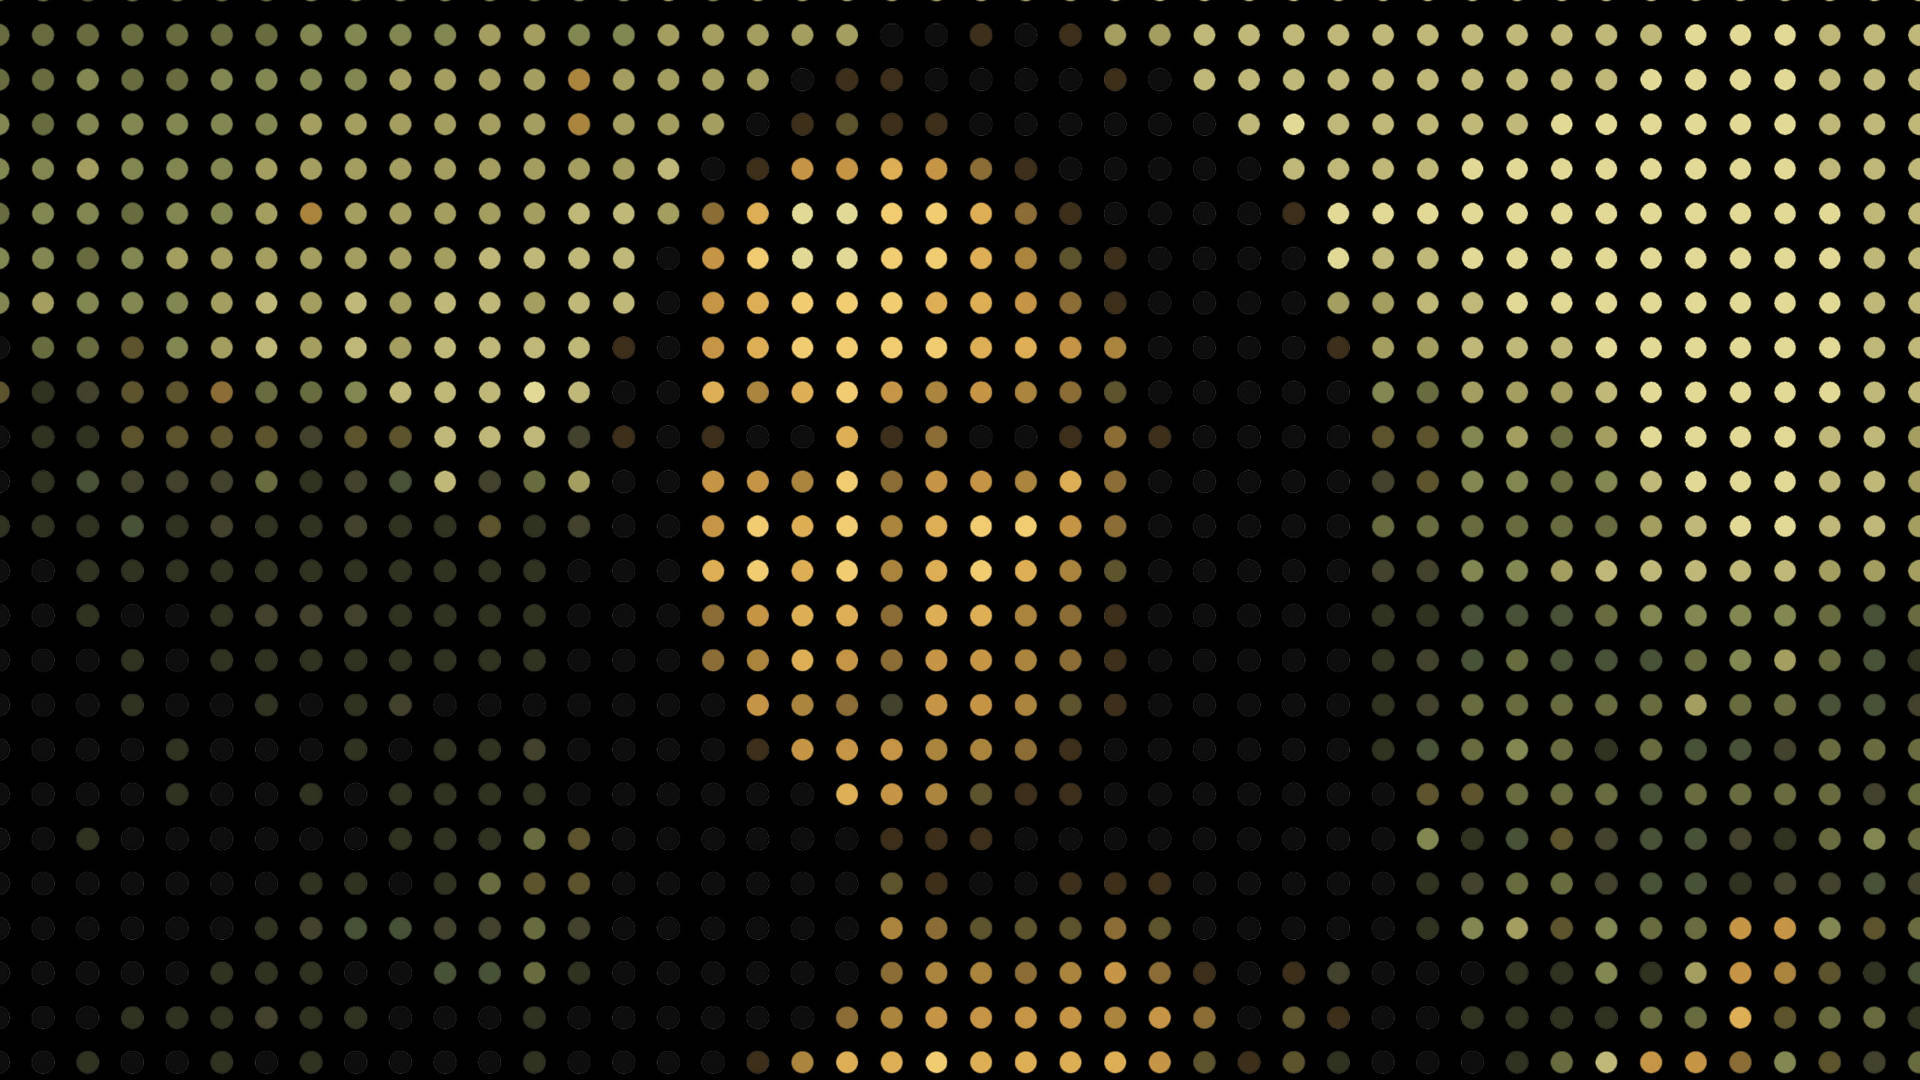 Mona Lisa Art Dots Wallpaper